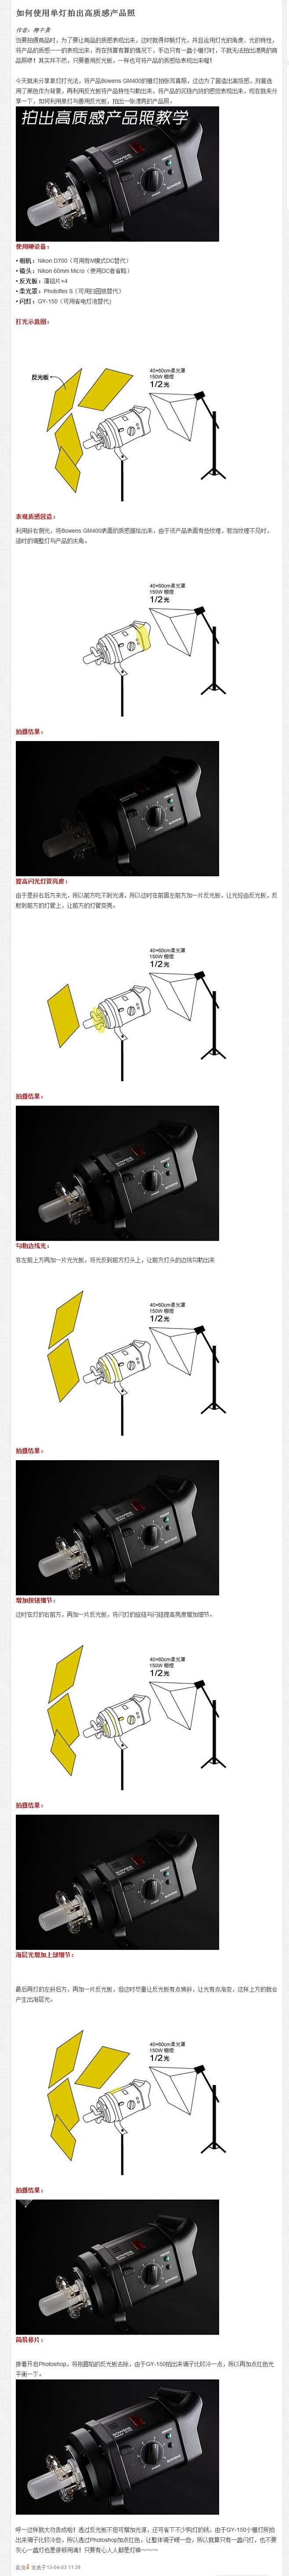 如何使用单灯拍出高质感产品照 - 产品摄...